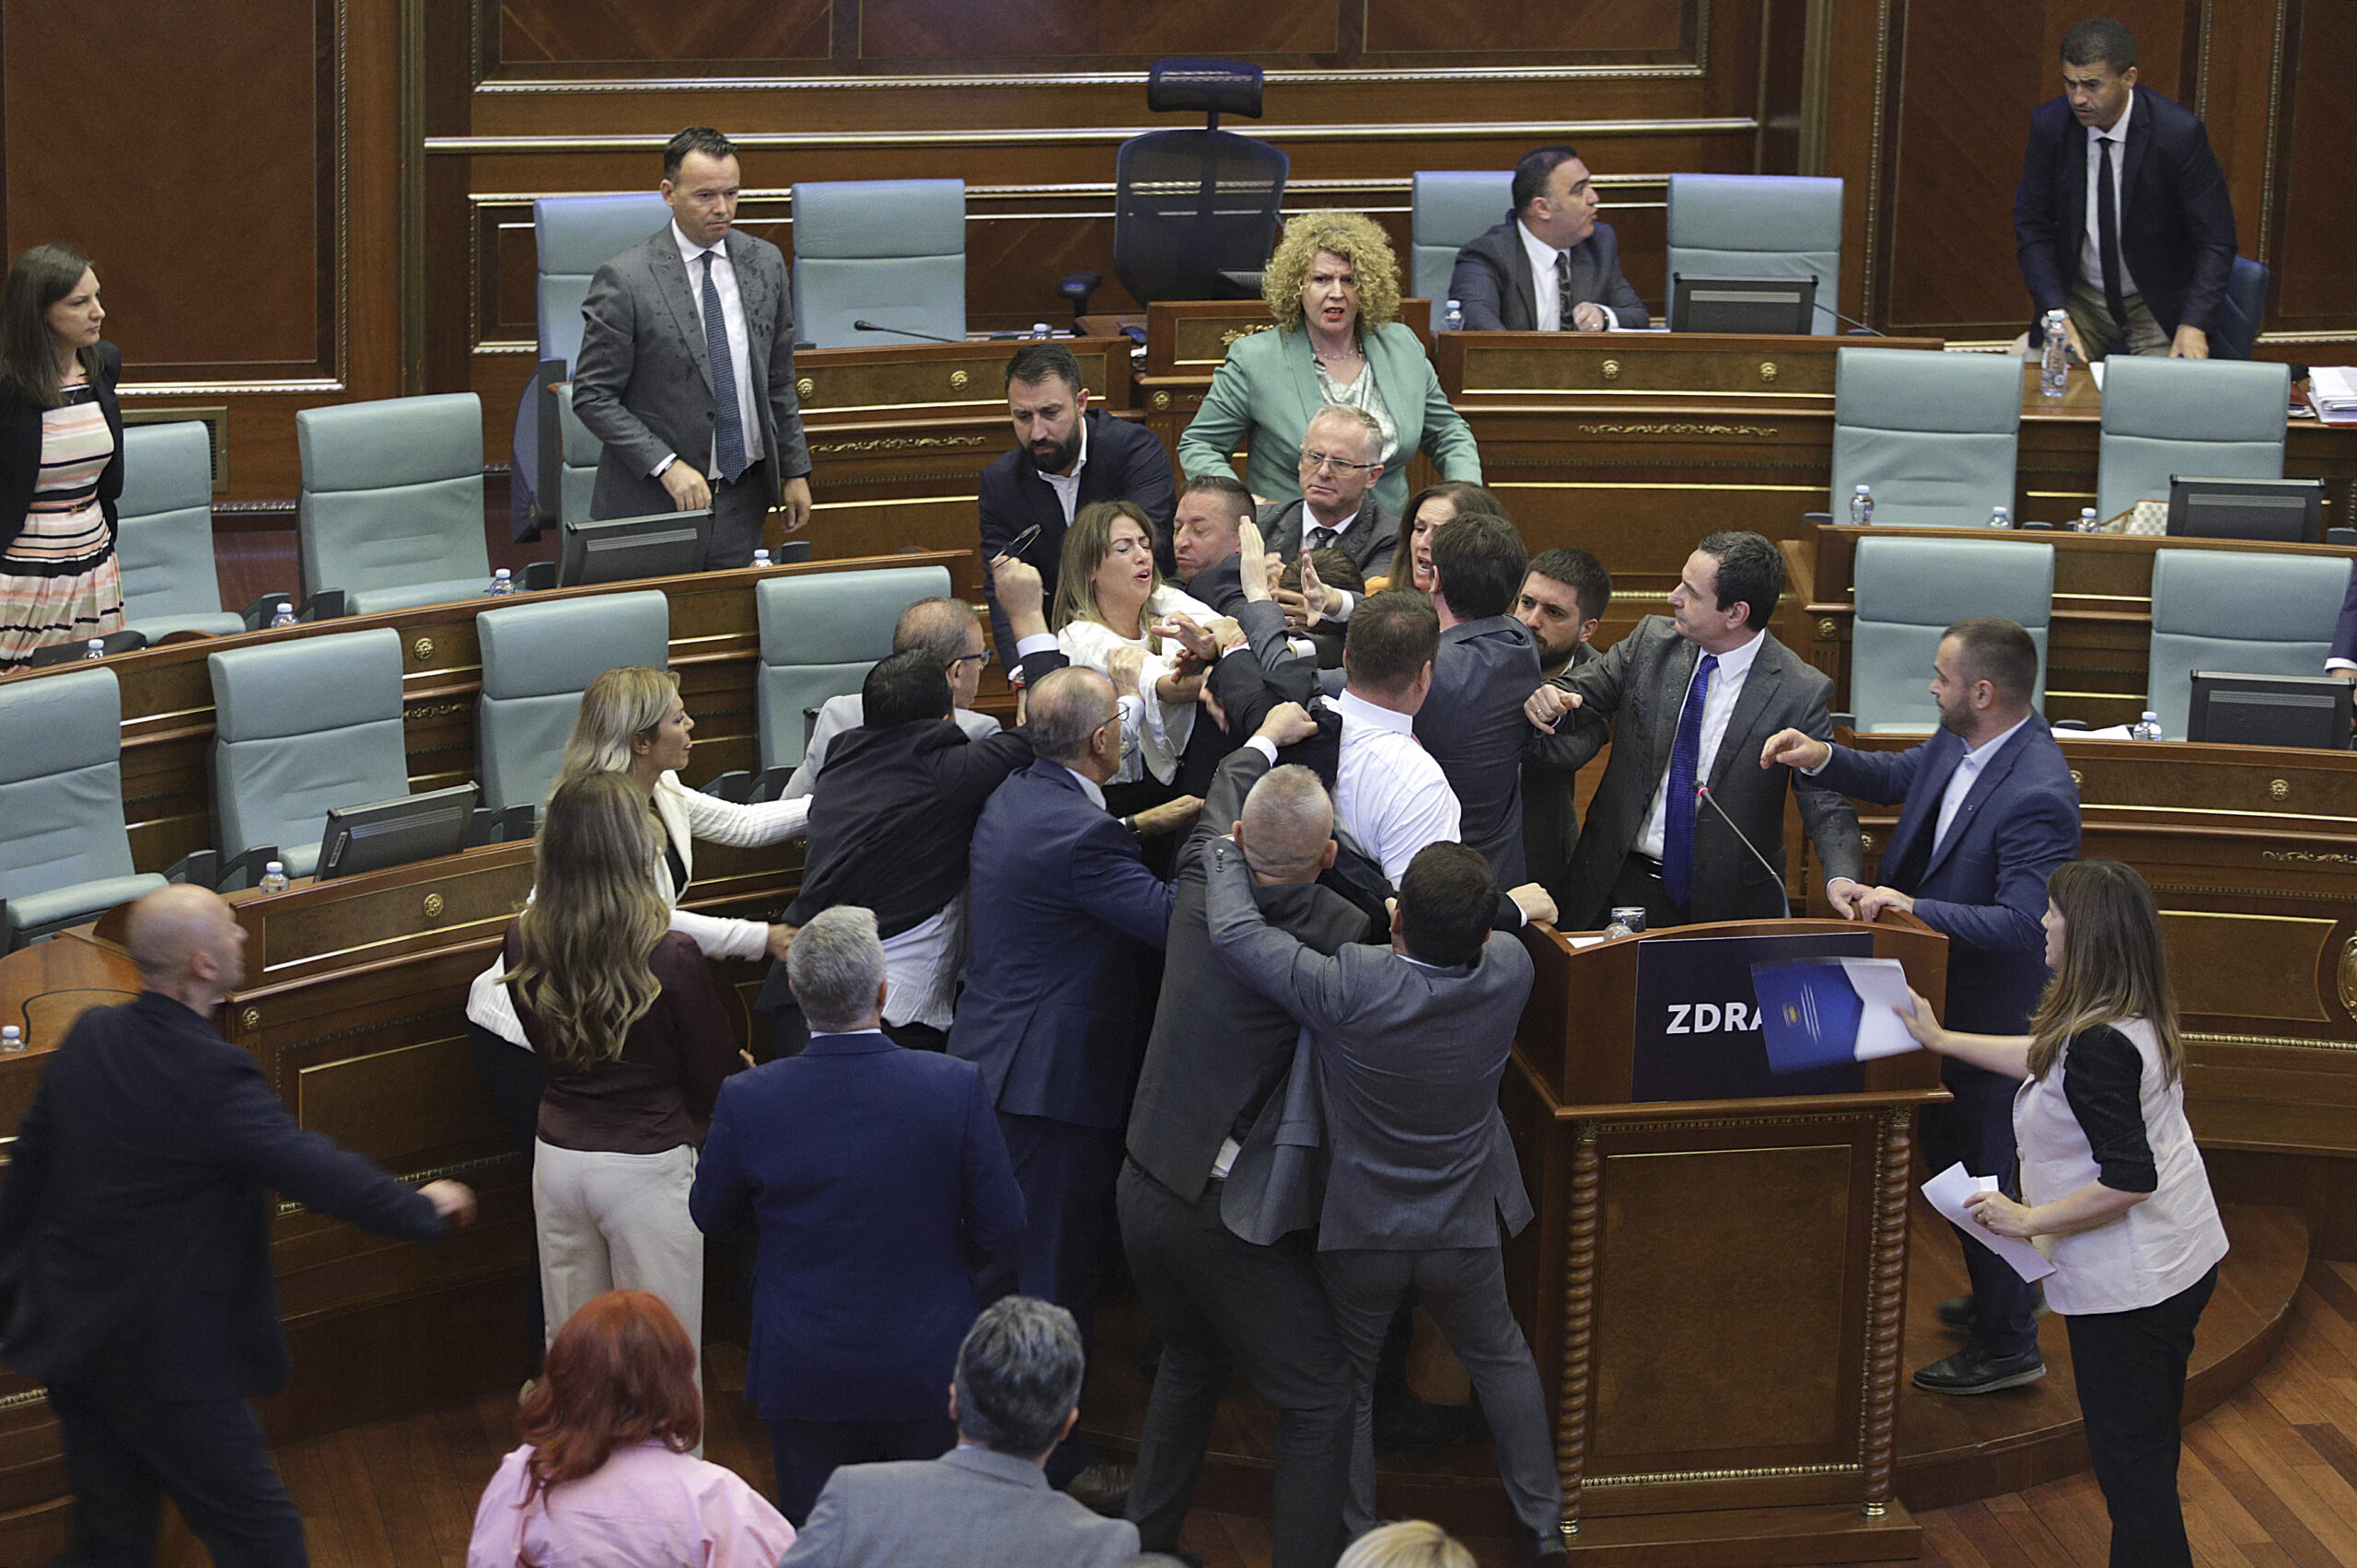 Πιάστηκαν στα χέρια βουλευτές της συμπολίτευσης κα της αντιπολίτευσης στην βουλή του Κοσόβου